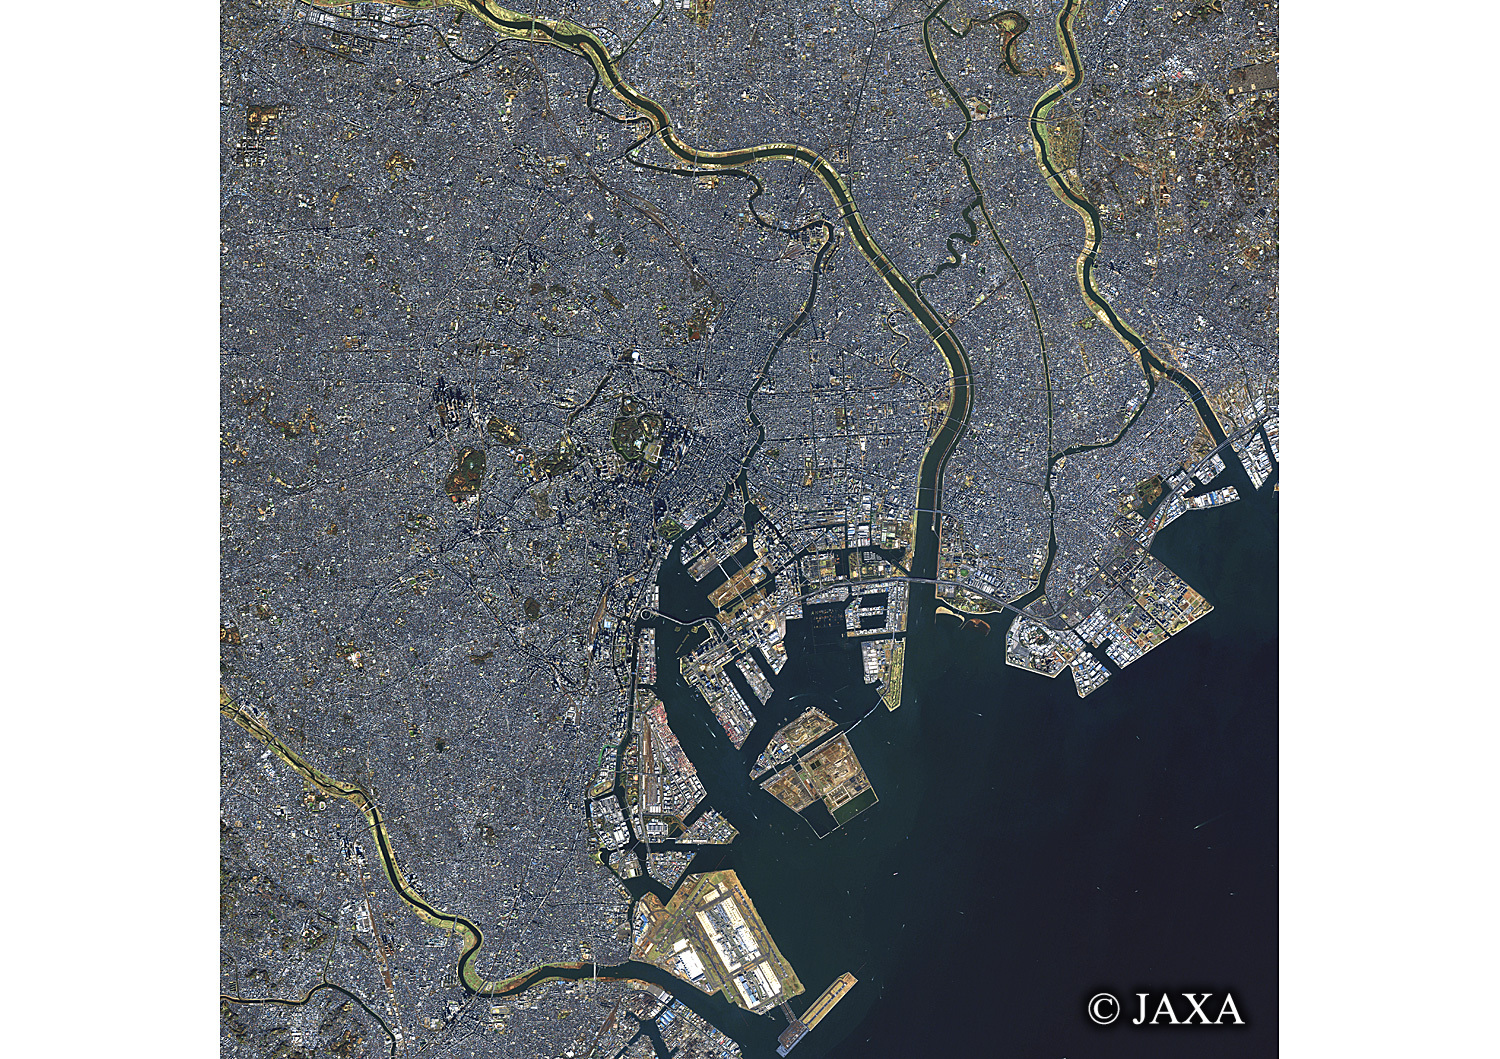 だいちから見た日本の都市 中央区と周辺地域:衛星画像